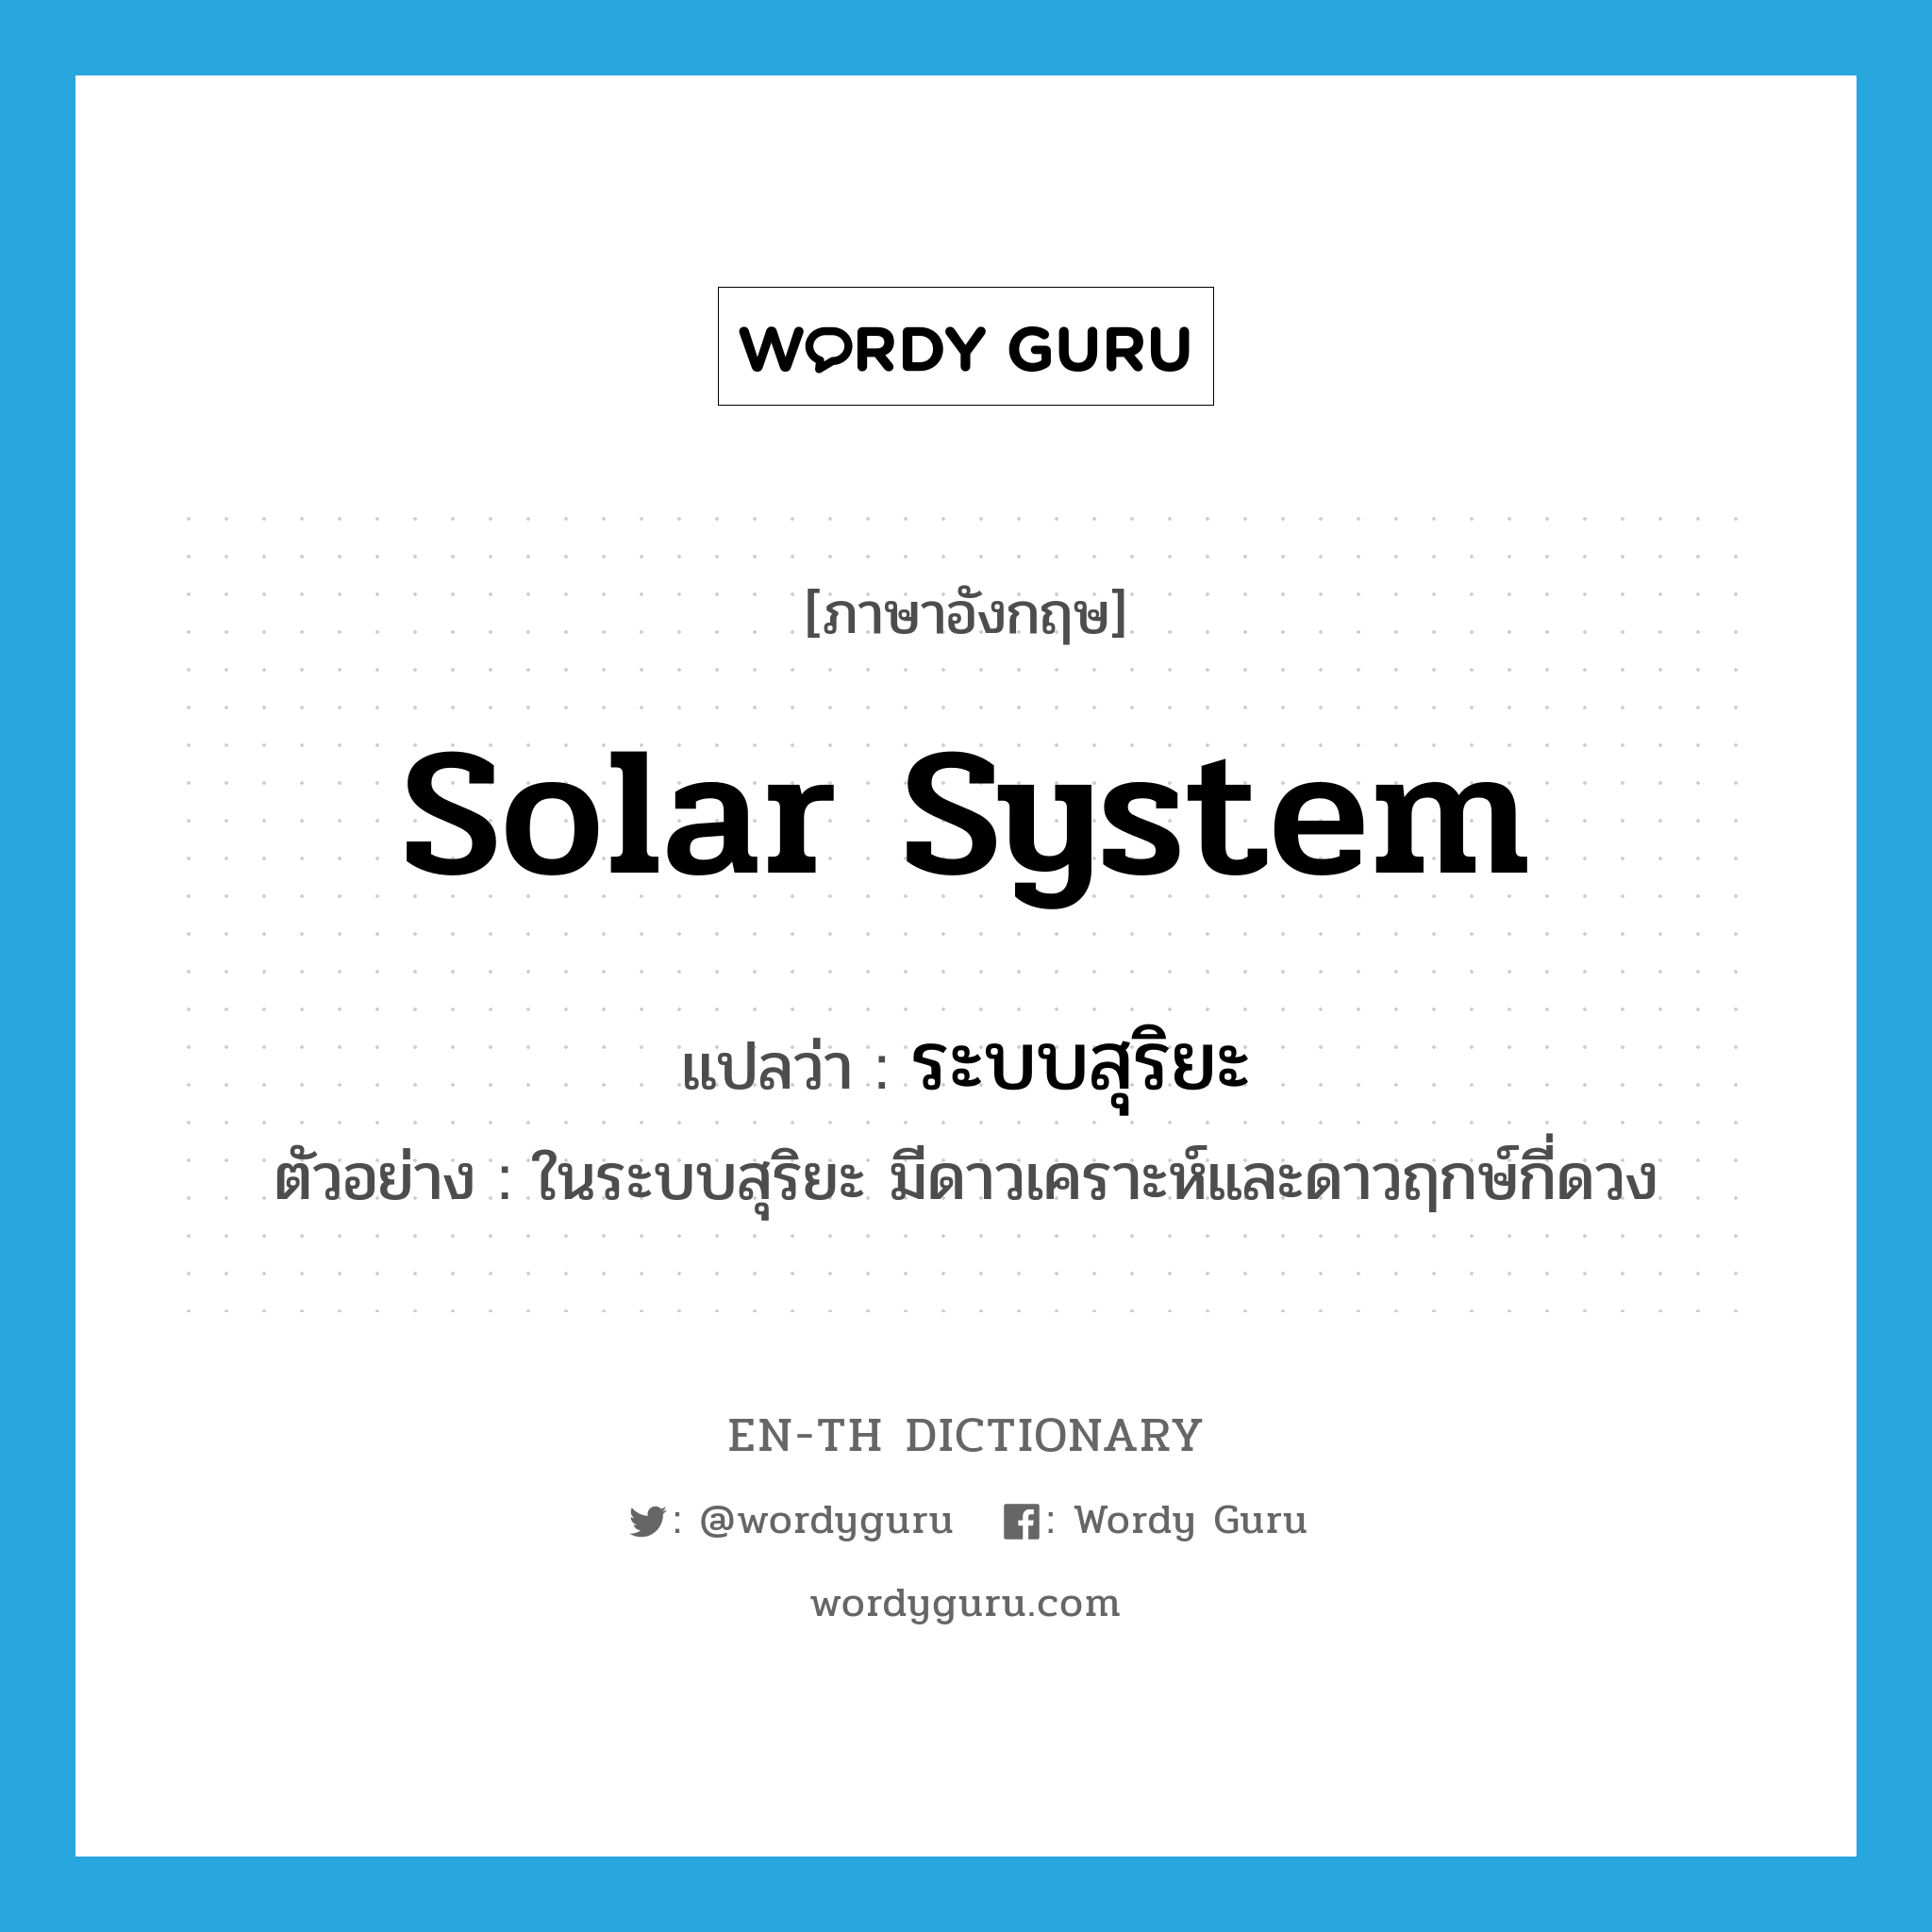 solar system แปลว่า?, คำศัพท์ภาษาอังกฤษ solar system แปลว่า ระบบสุริยะ ประเภท N ตัวอย่าง ในระบบสุริยะ มีดาวเคราะห์และดาวฤกษ์กี่ดวง หมวด N